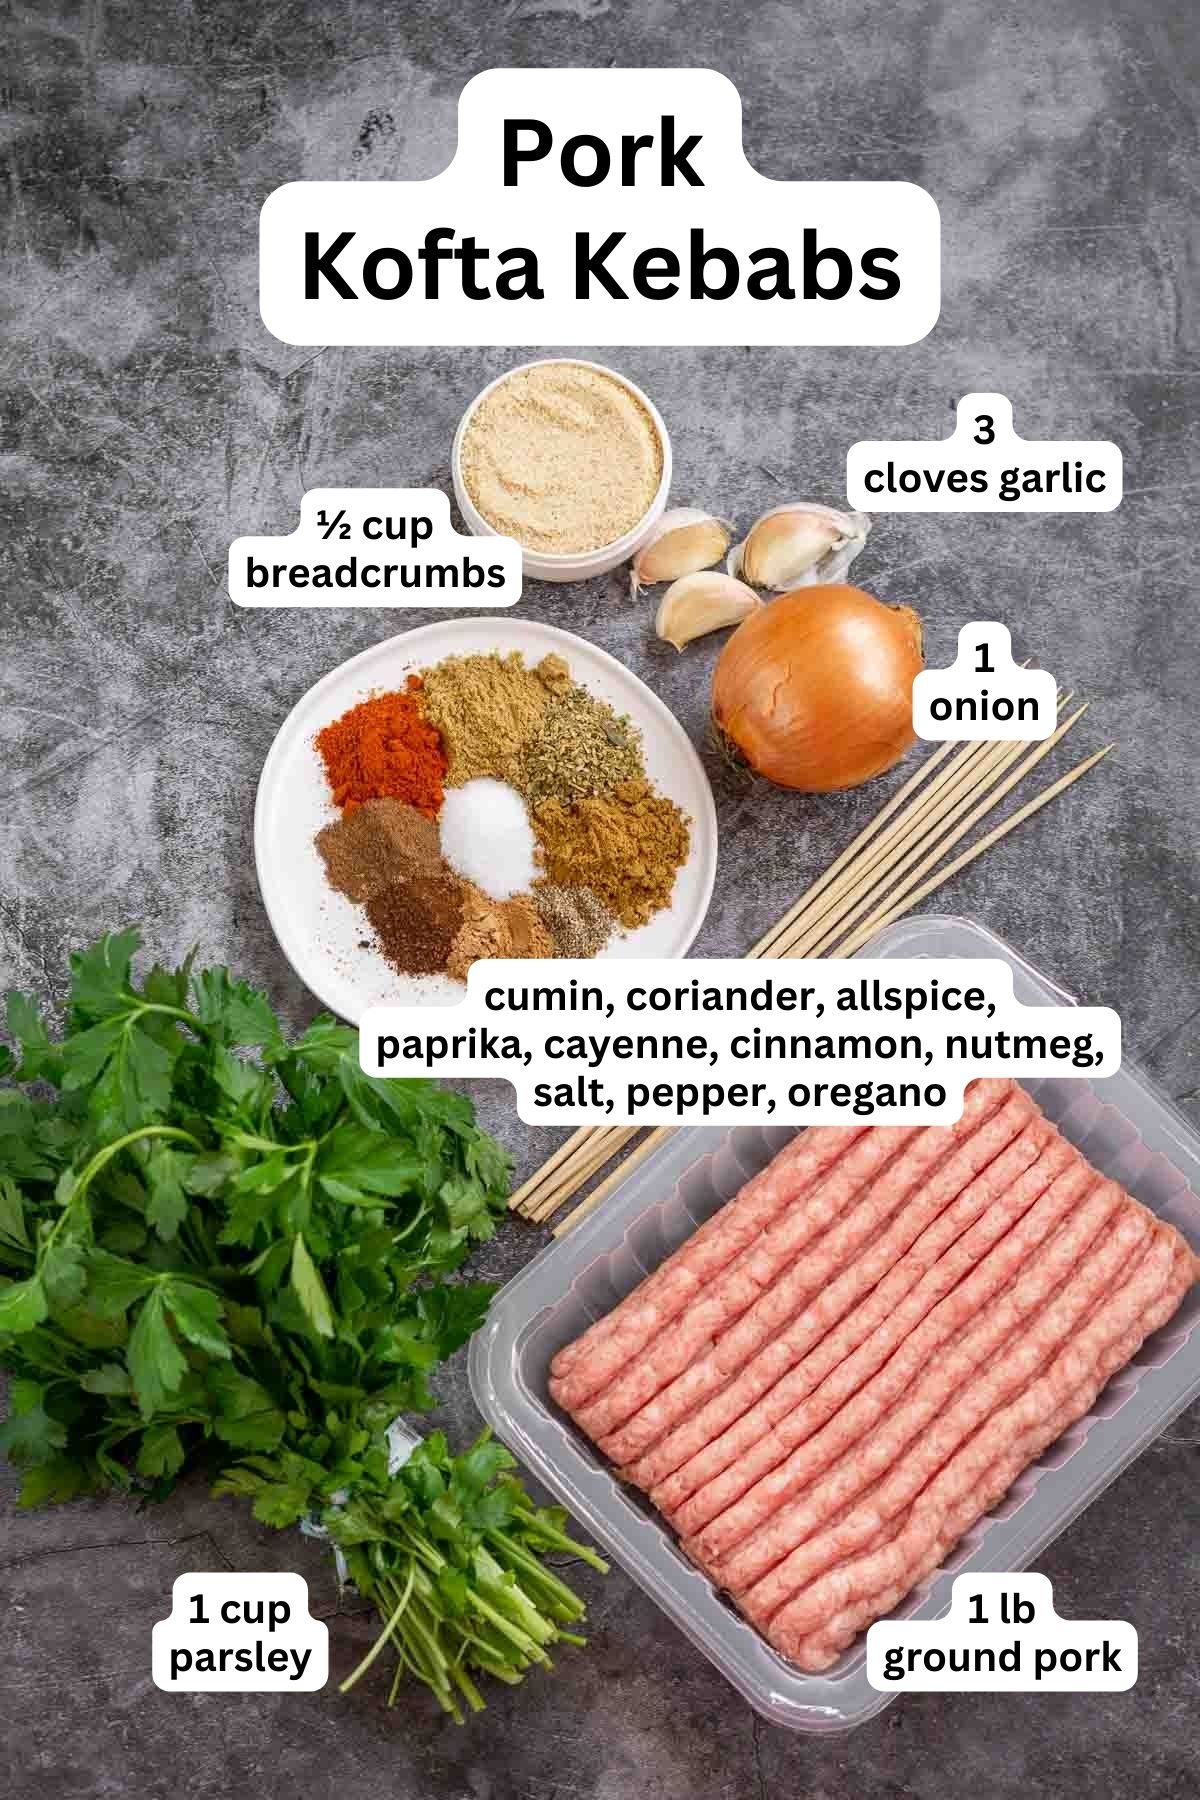 Ingredients to make pork kofta kebabs